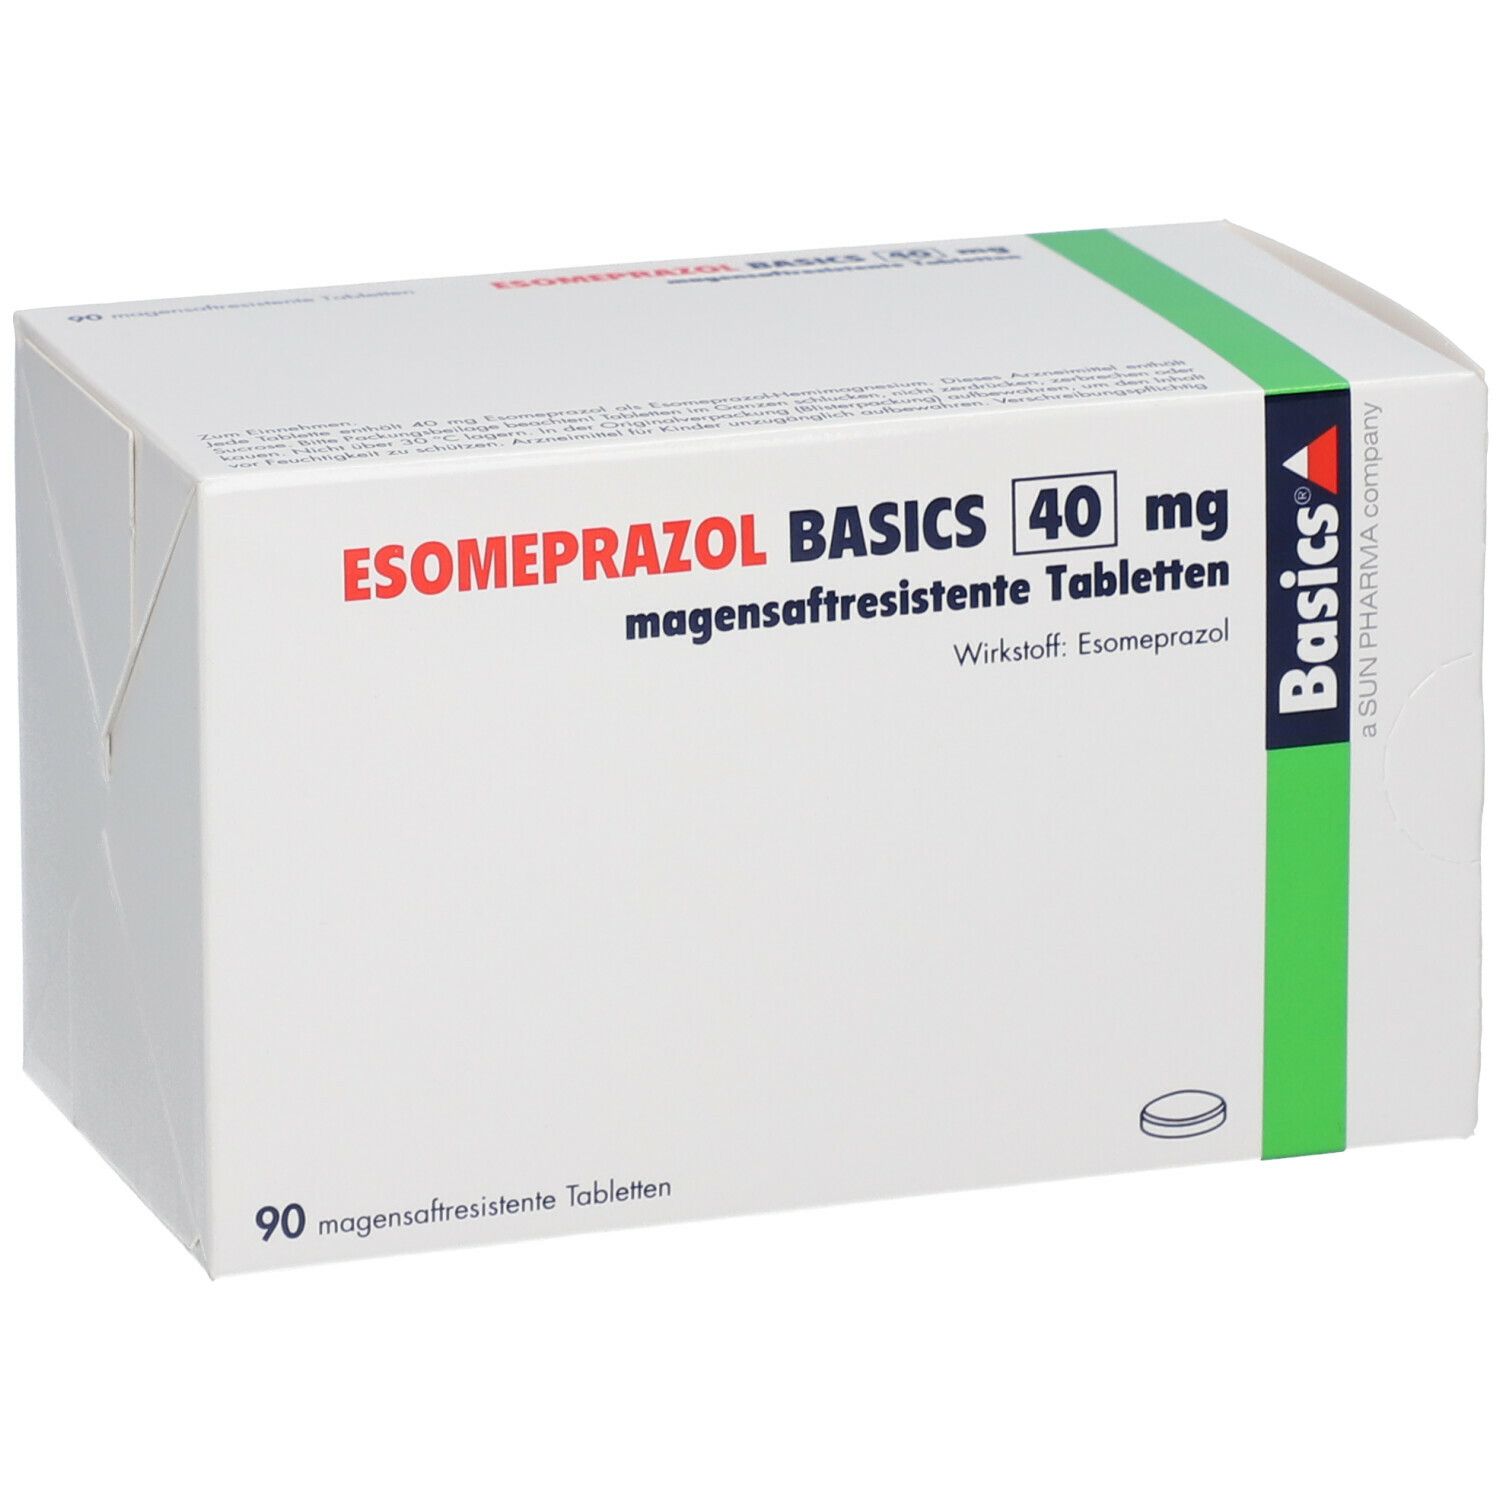 ESOMEPRAZOL BASICS 40 mg